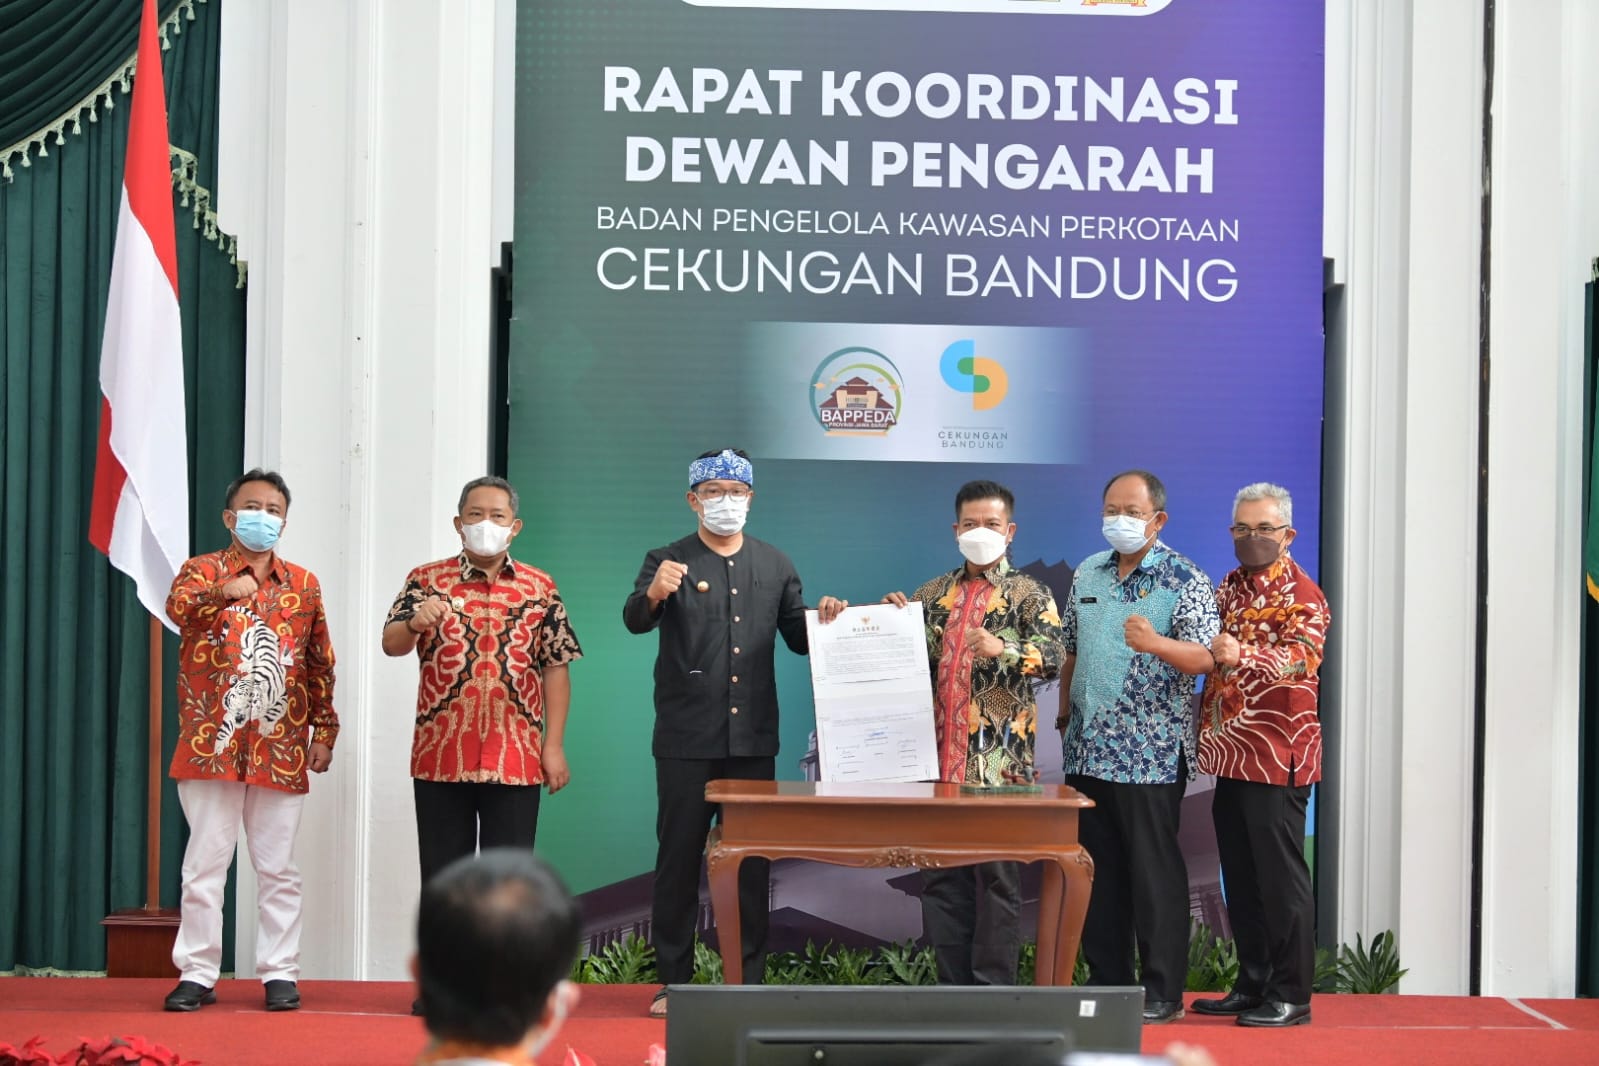 Kepala daerah di Bandung Raya menyepakati rencana kerja dan program percepatan Badan Pengelola Kawasan Perkotaan Cekungan Bandung. (Humas Jabar)